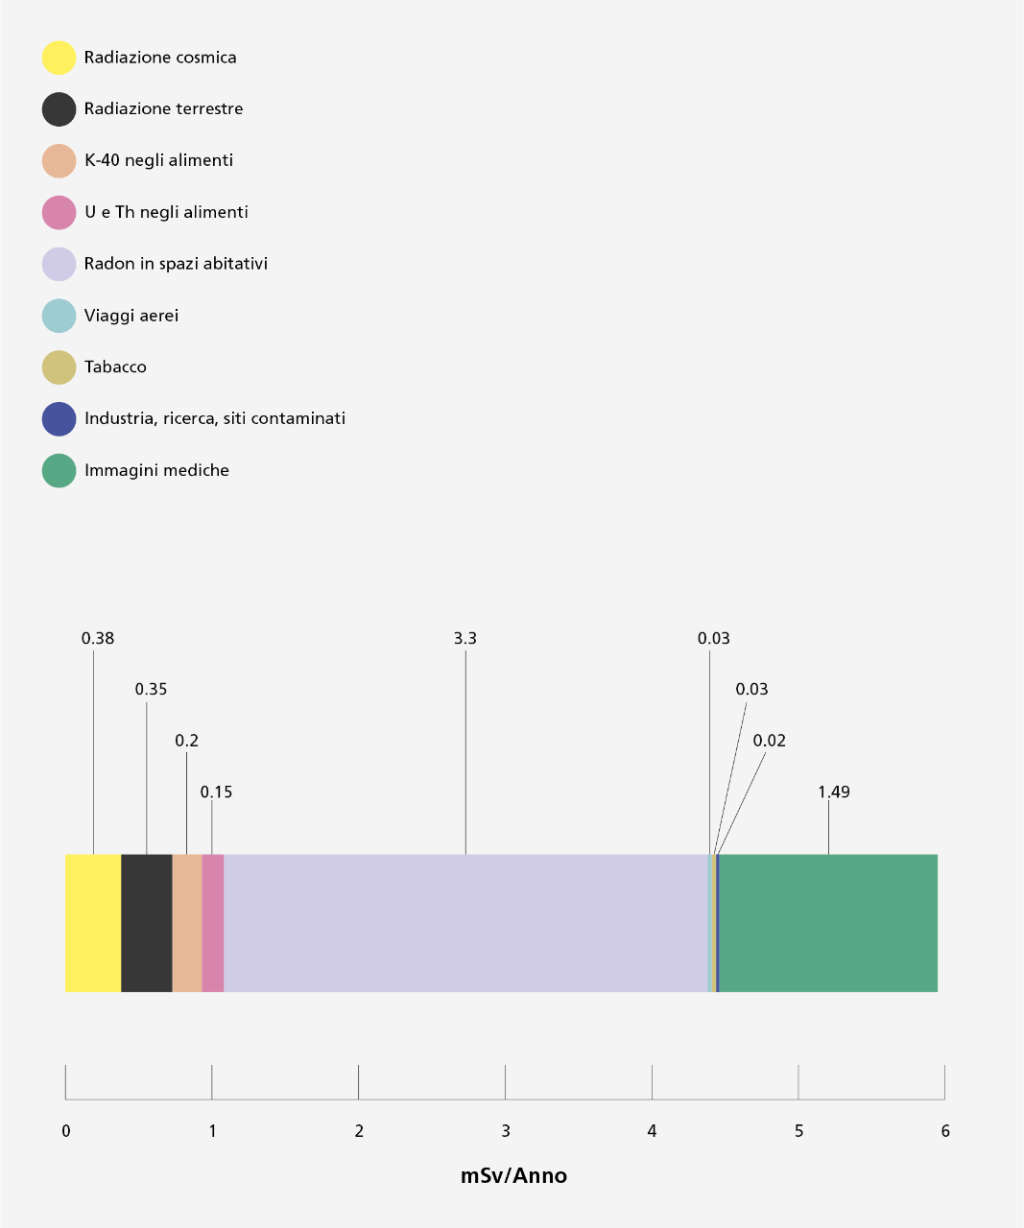 La figura mostra i valori medi dei vari contributi alla dose efficace (in mSv) per anno e per abitante in Svizzera come strisce colorate su una barra. Le radiazioni cosmiche costituiscono 0,38 mSv all'anno, le radiazioni terrestri 0,35 mSv, il potassio-40 negli alimenti 0,2 mSv, l'uranio e il torio negli alimenti 0,15 mSv, il radon nelle abitazioni 3,3 mSv (domina di gran lunga), i viaggi aerei e il fumo 0,03 mSv ciascuno, e gli scarichi di industrie, ospedali e ricerca 0,02 mSv all'anno. La diagnostica per immagini contribuisce con una media di 1,49 mSv all'anno.